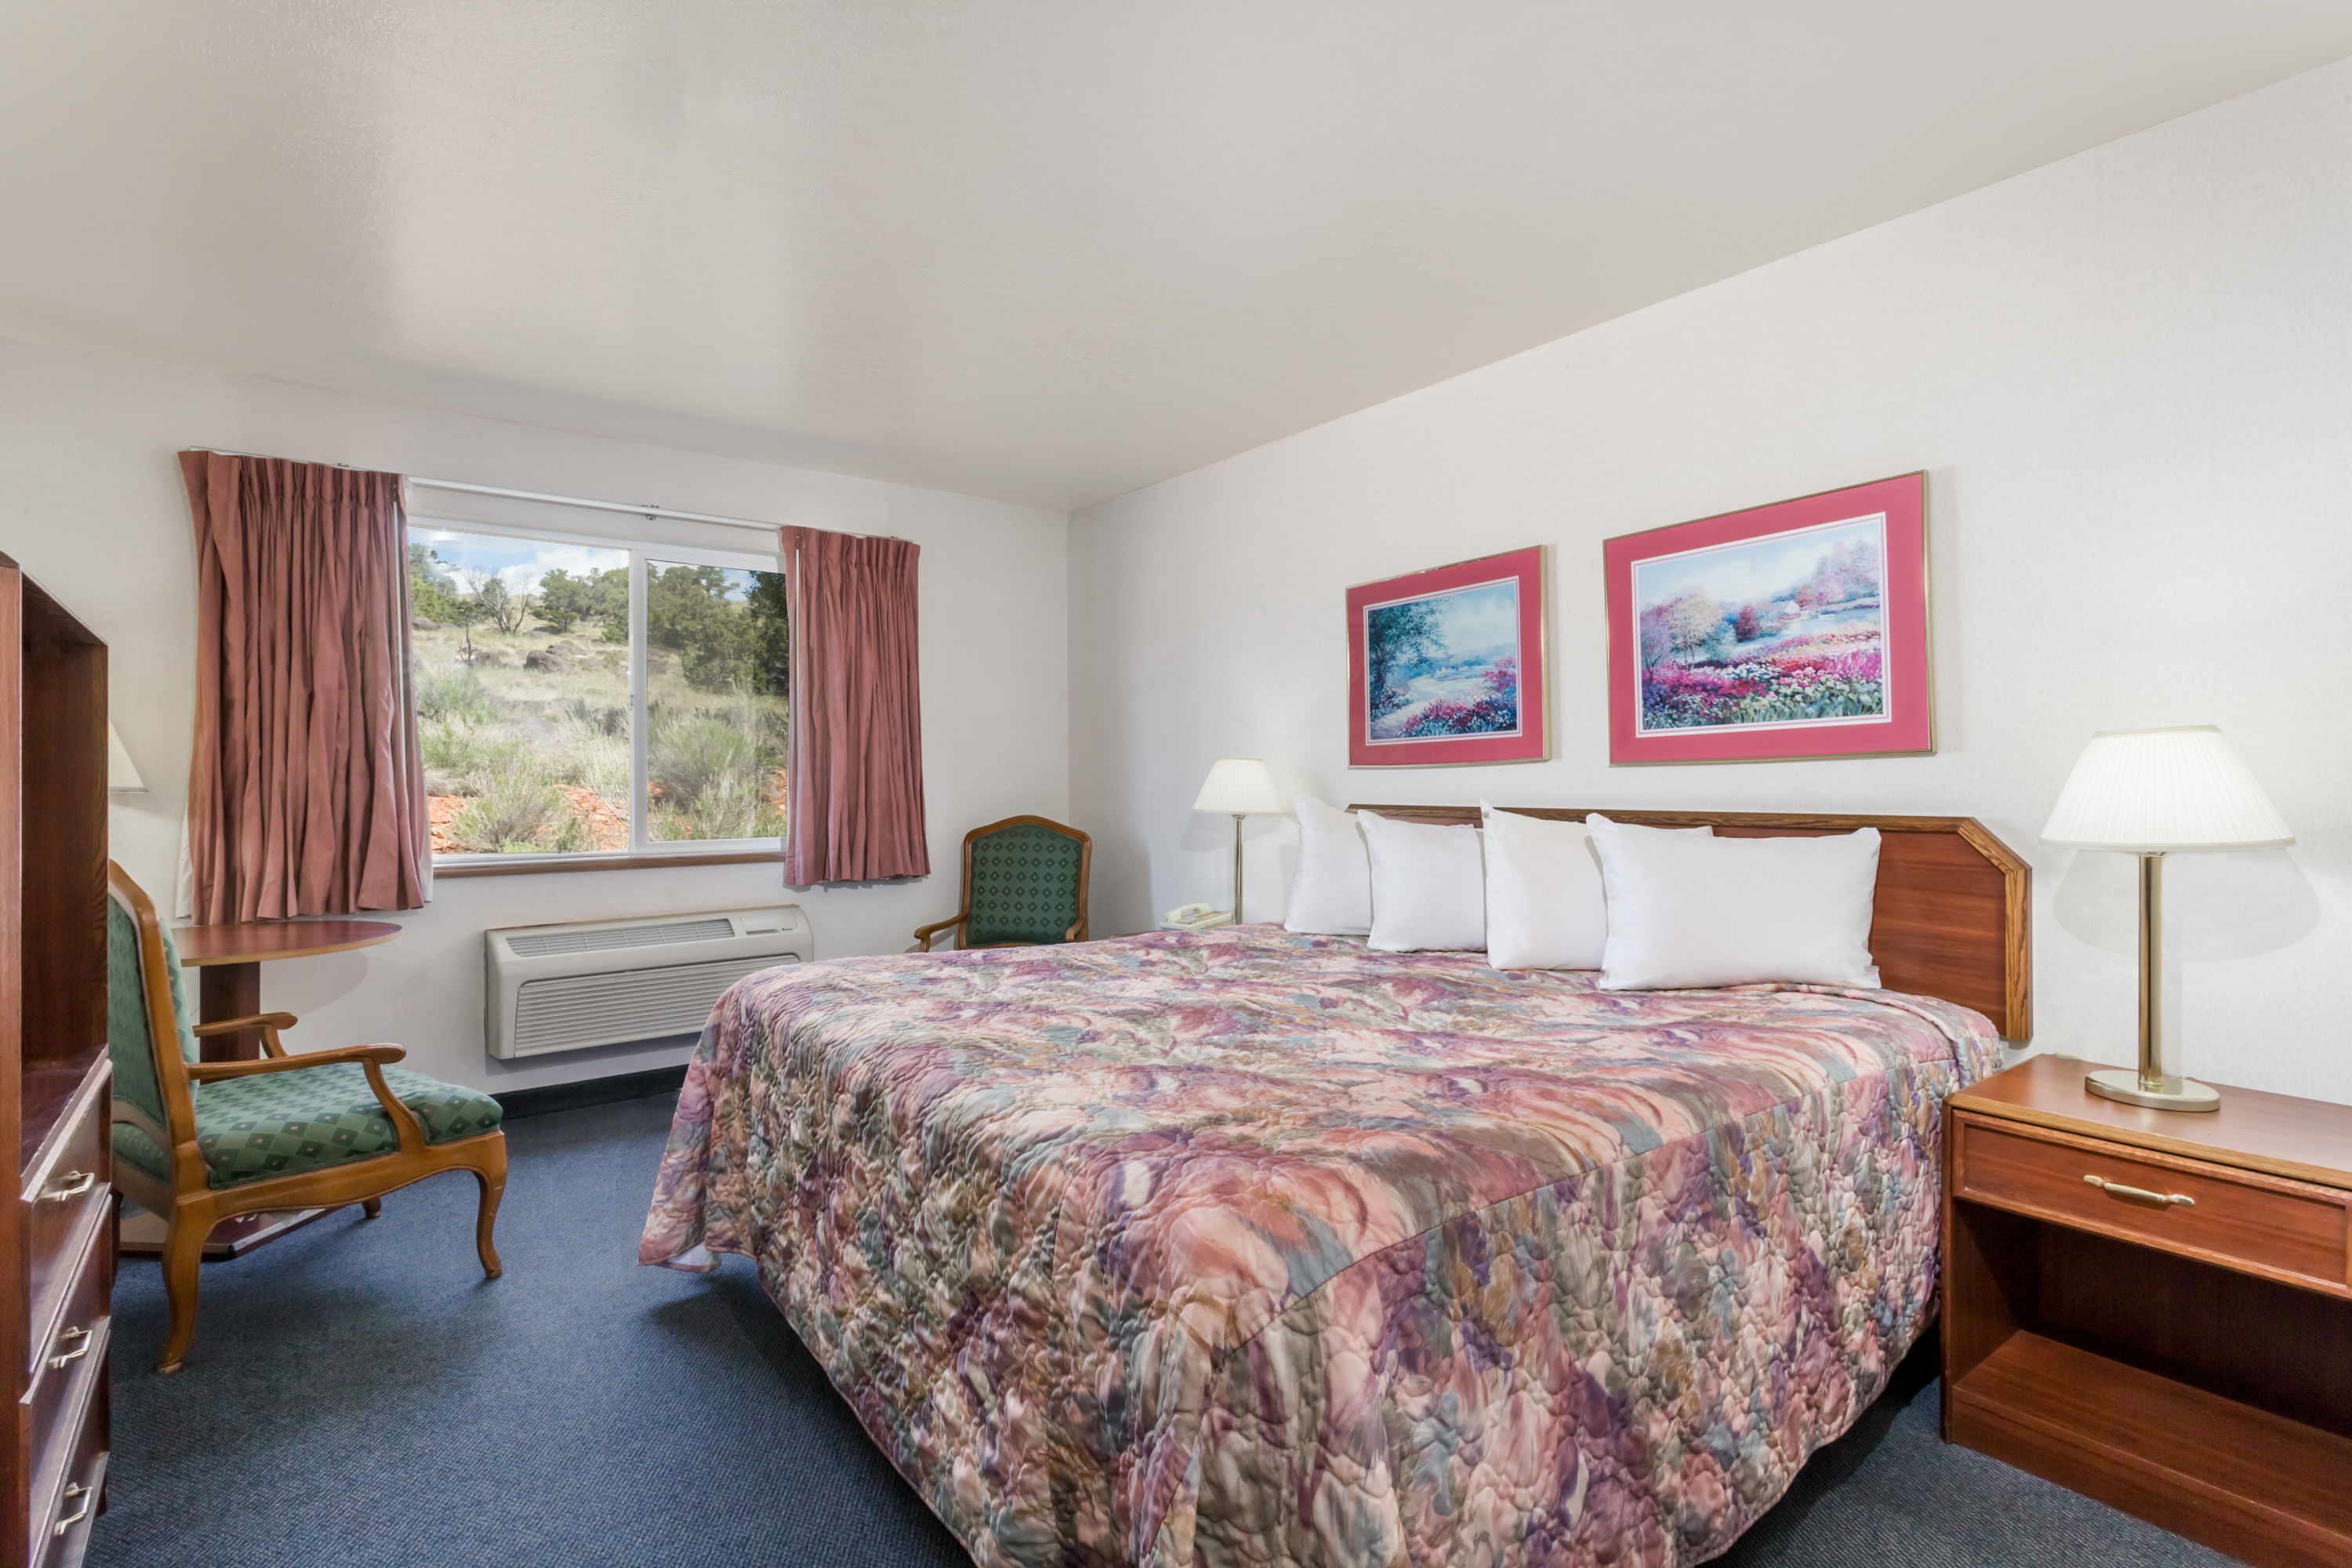 Days Inn by Wyndham Torrey Capital Reef | Torrey, UT Hotels